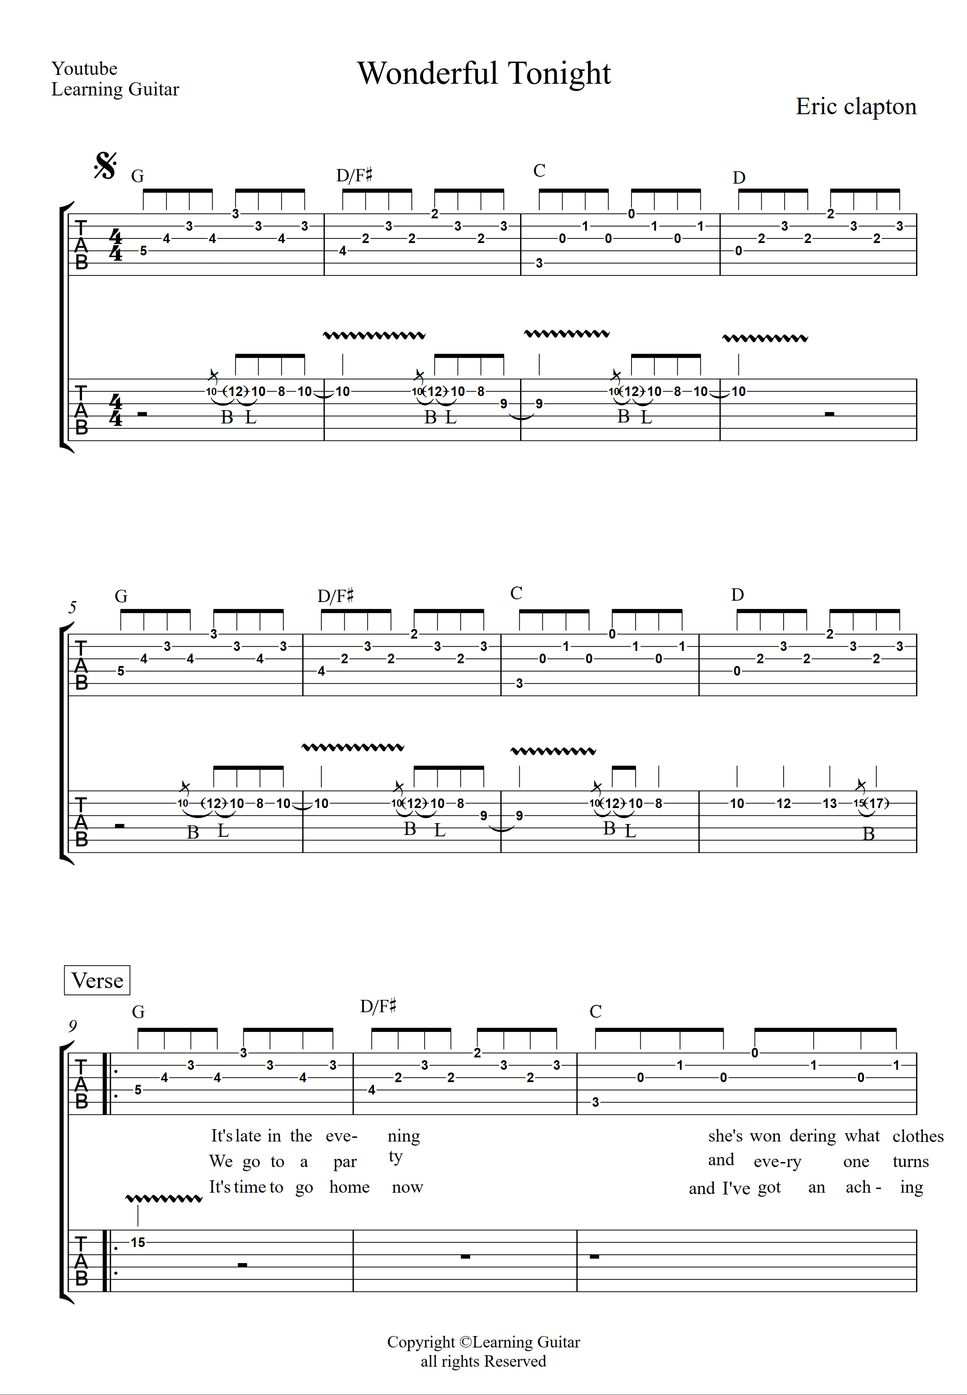 Eric Clapton - Wonderful Tonight (Guitar Lead & Rhythm TAB) by Learning Guitar